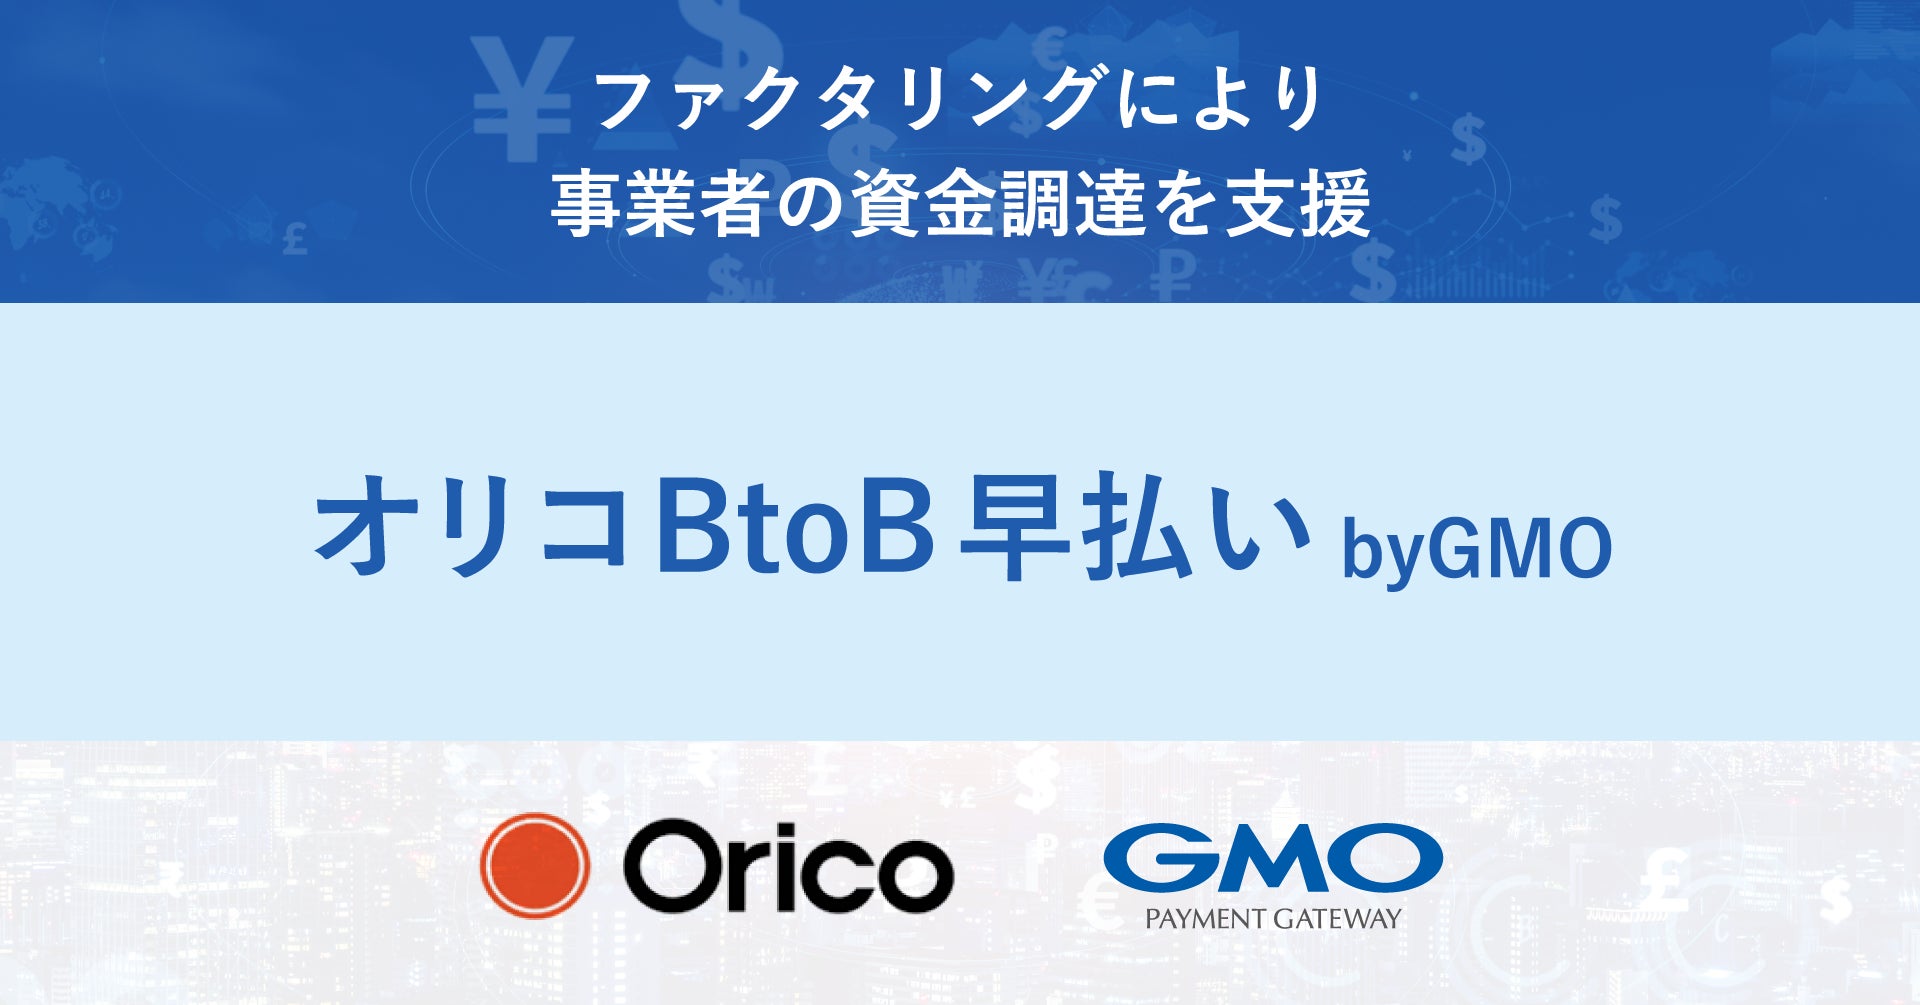 オリコと協業し「オリコBtoB早払い byGMO」を提供【GMOペイメントゲートウェイ】